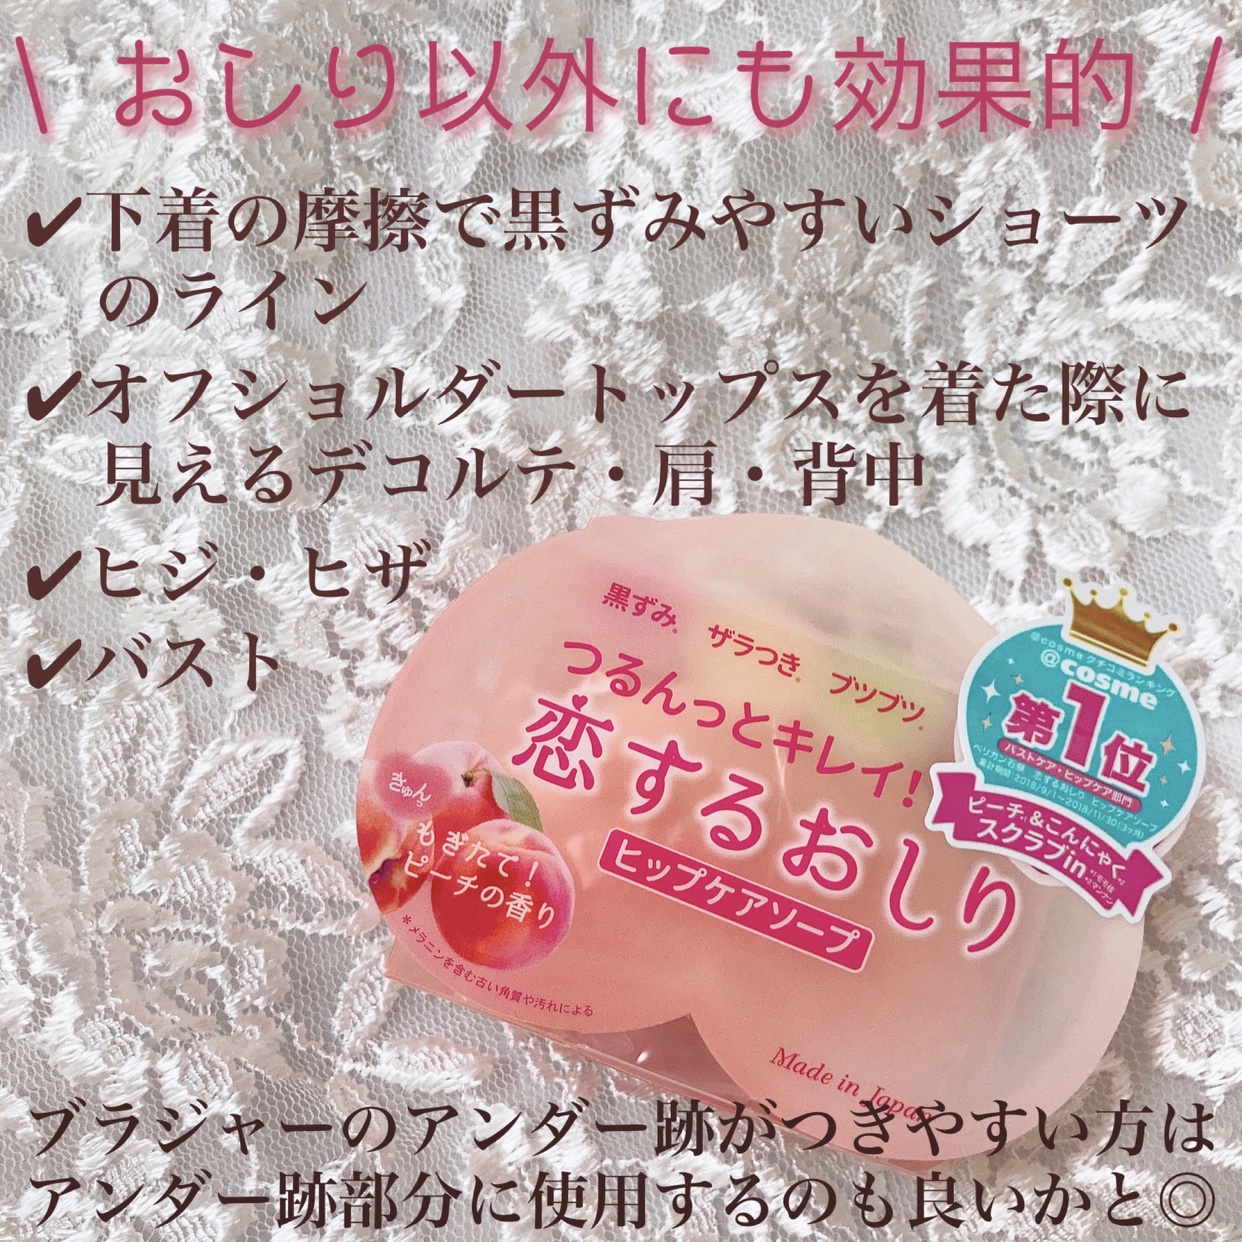 ペリカン石鹸(PELICAN SOAP) 恋するおしりの良い点・メリットに関するsatomiさんの口コミ画像2